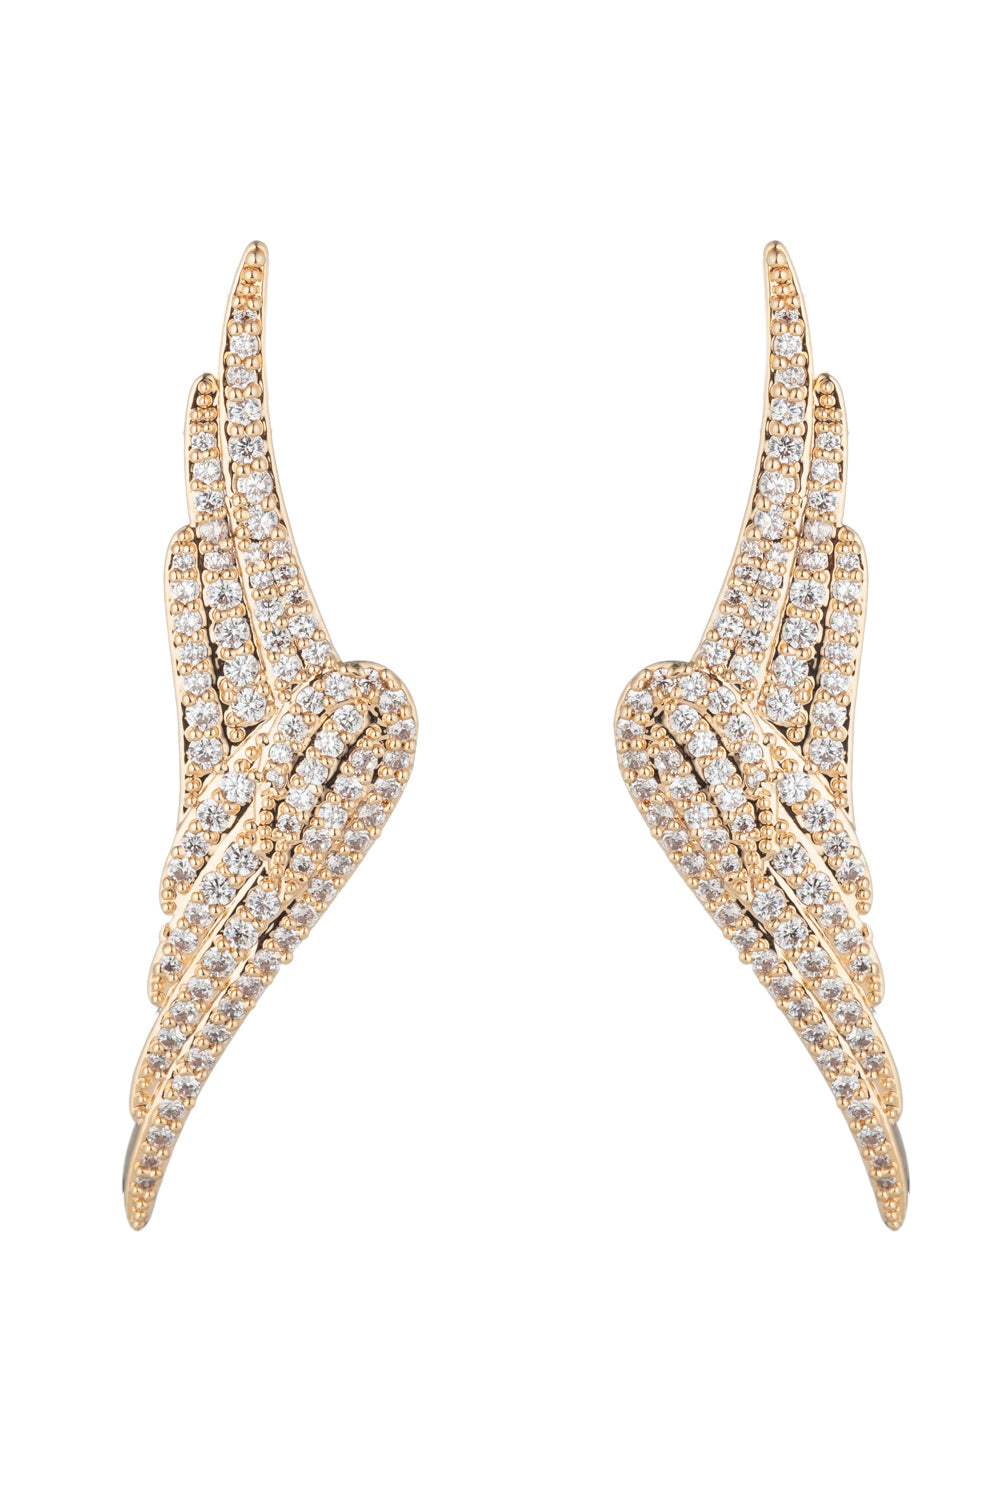 Angel wing CZ crystal earrings.